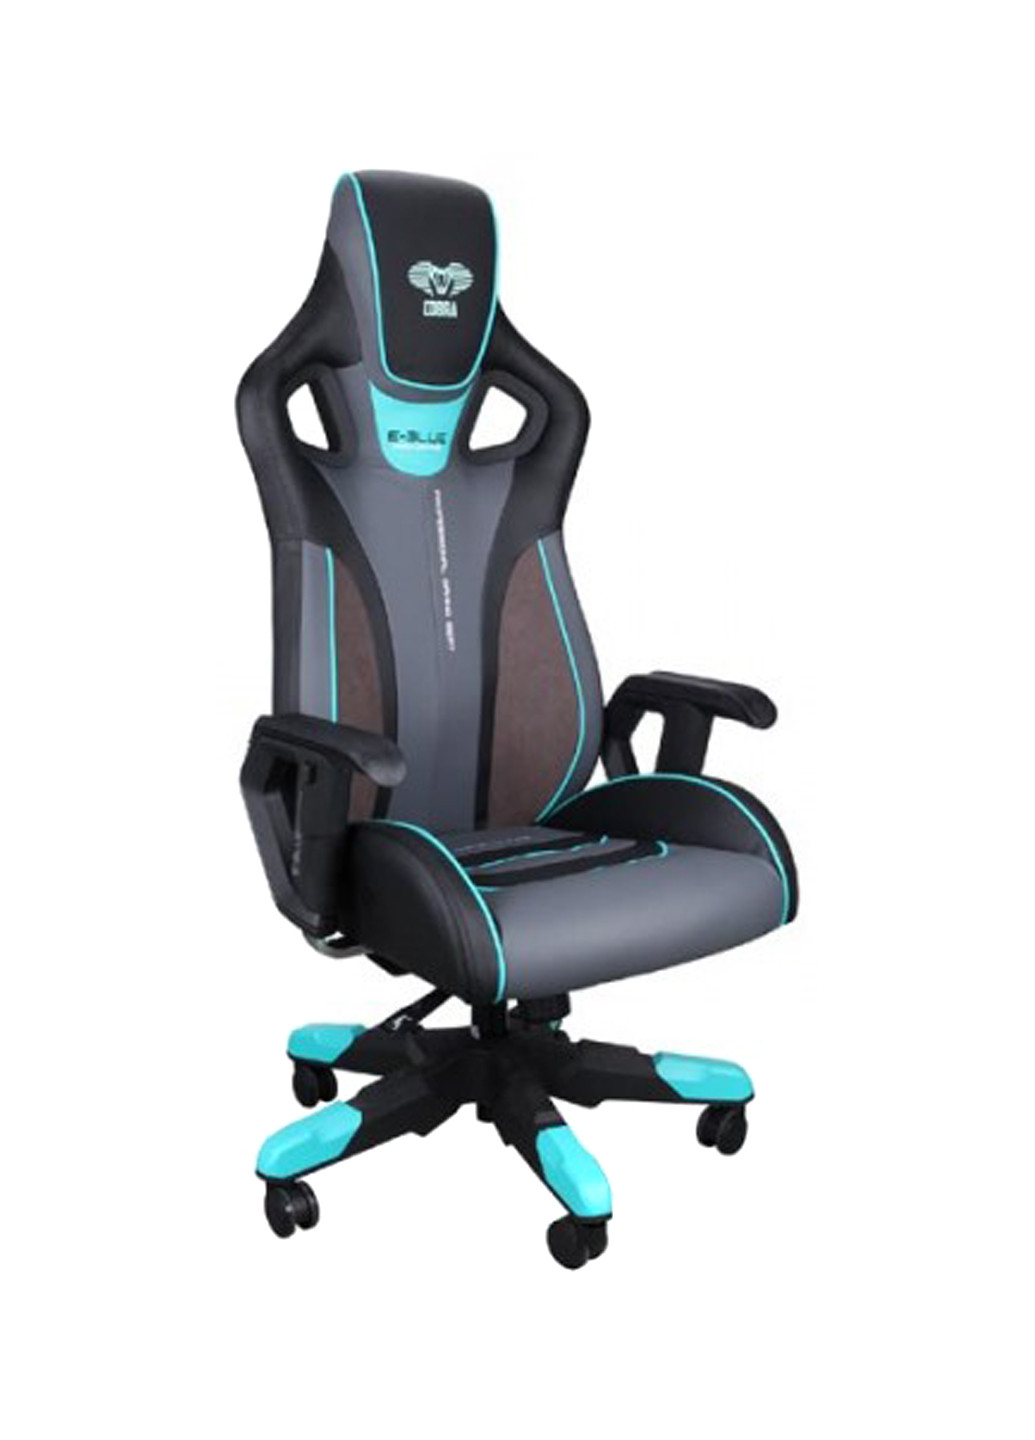 Кресло игровое COBRA, синее (EEC313BLAA-IA) E-Blue кресло игровое e-blue cobra, синее (eec313blaa-ia) (135316988)